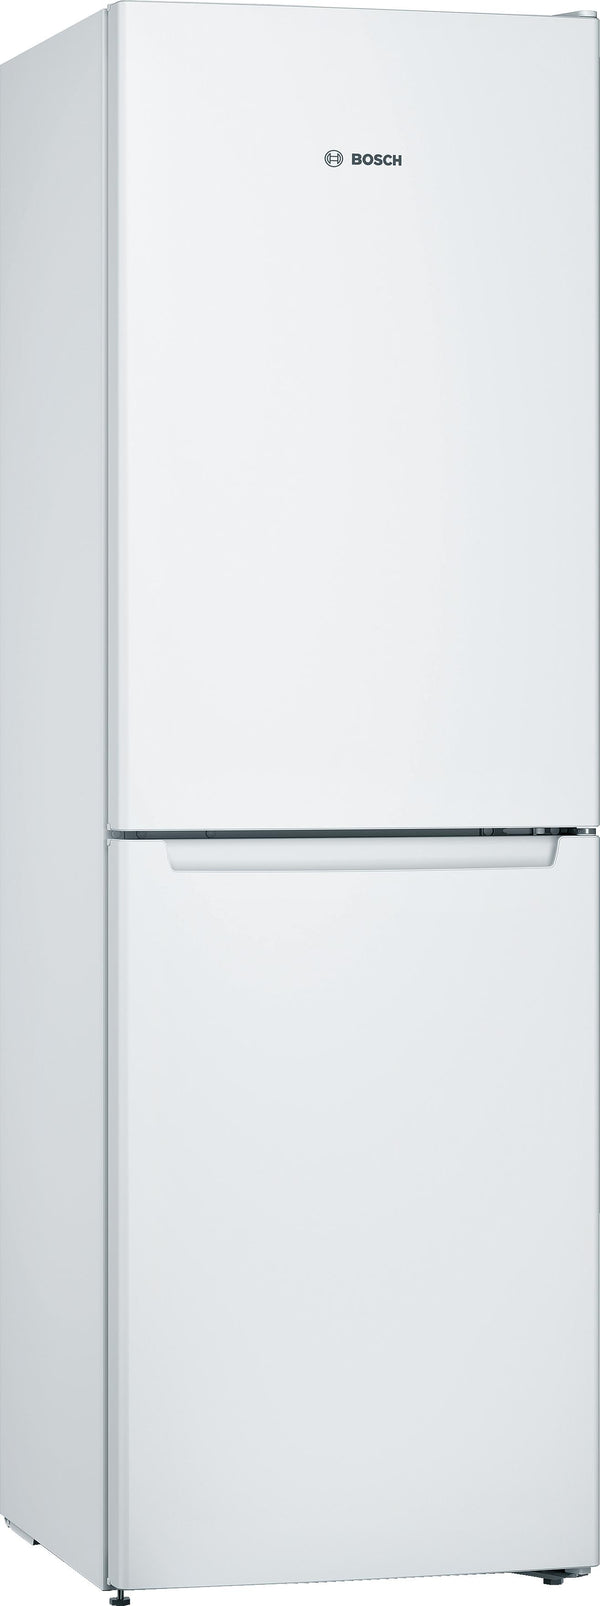 Refurbished Bosch Serie 2 KGN34NW3AG Fridge Freezer 186CM White - Freestanding